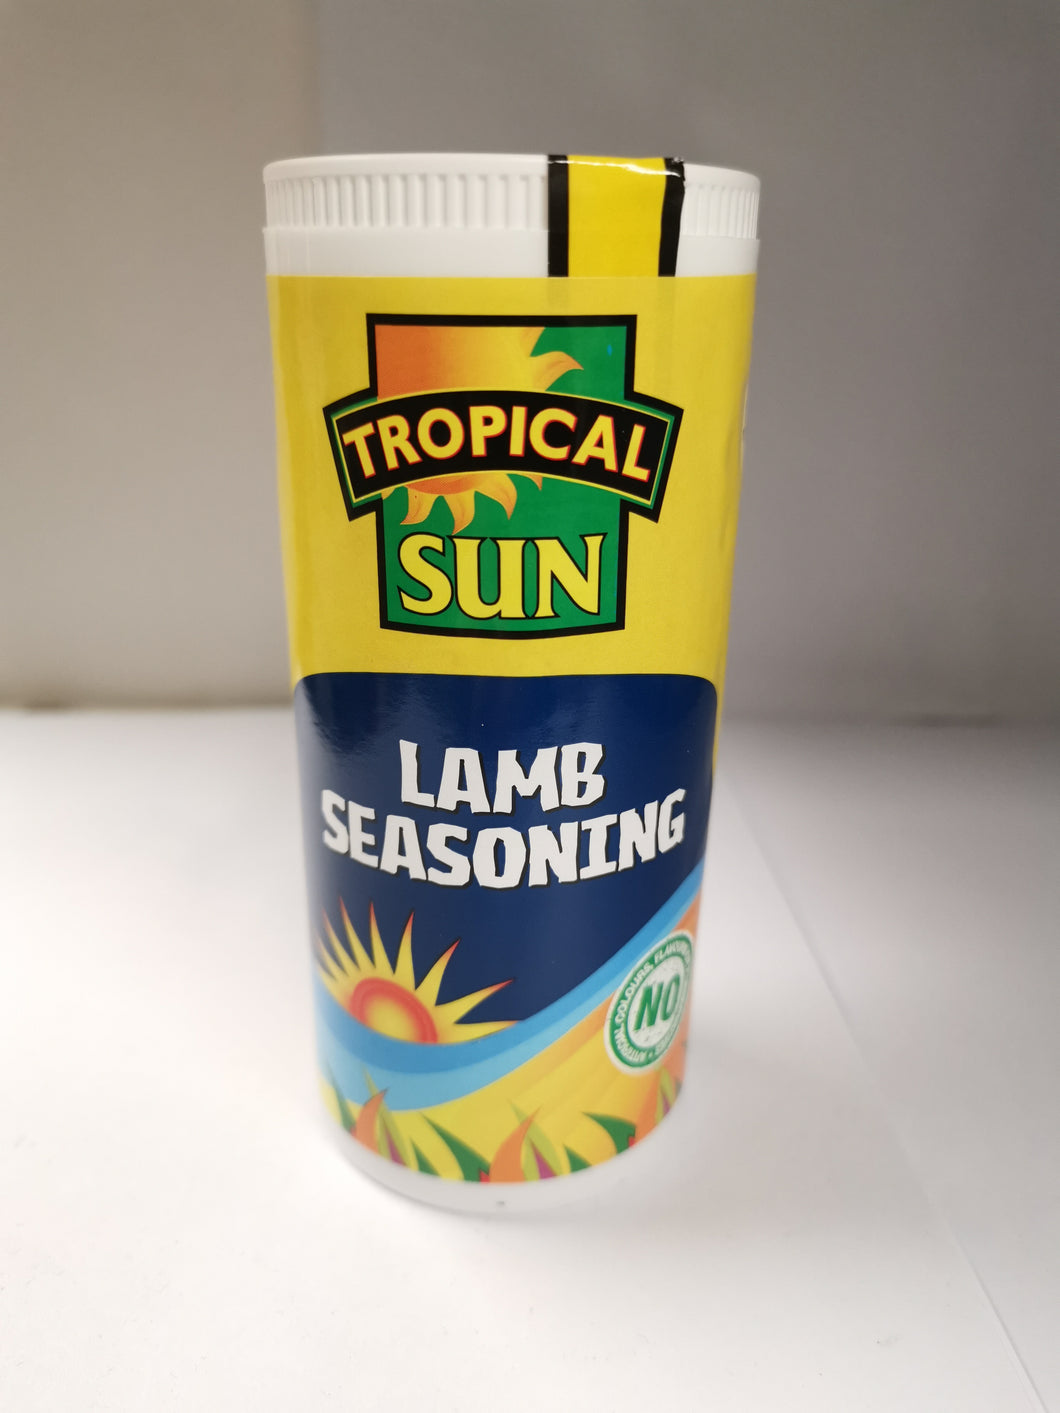 Tropical Sun Lamb Seasoning